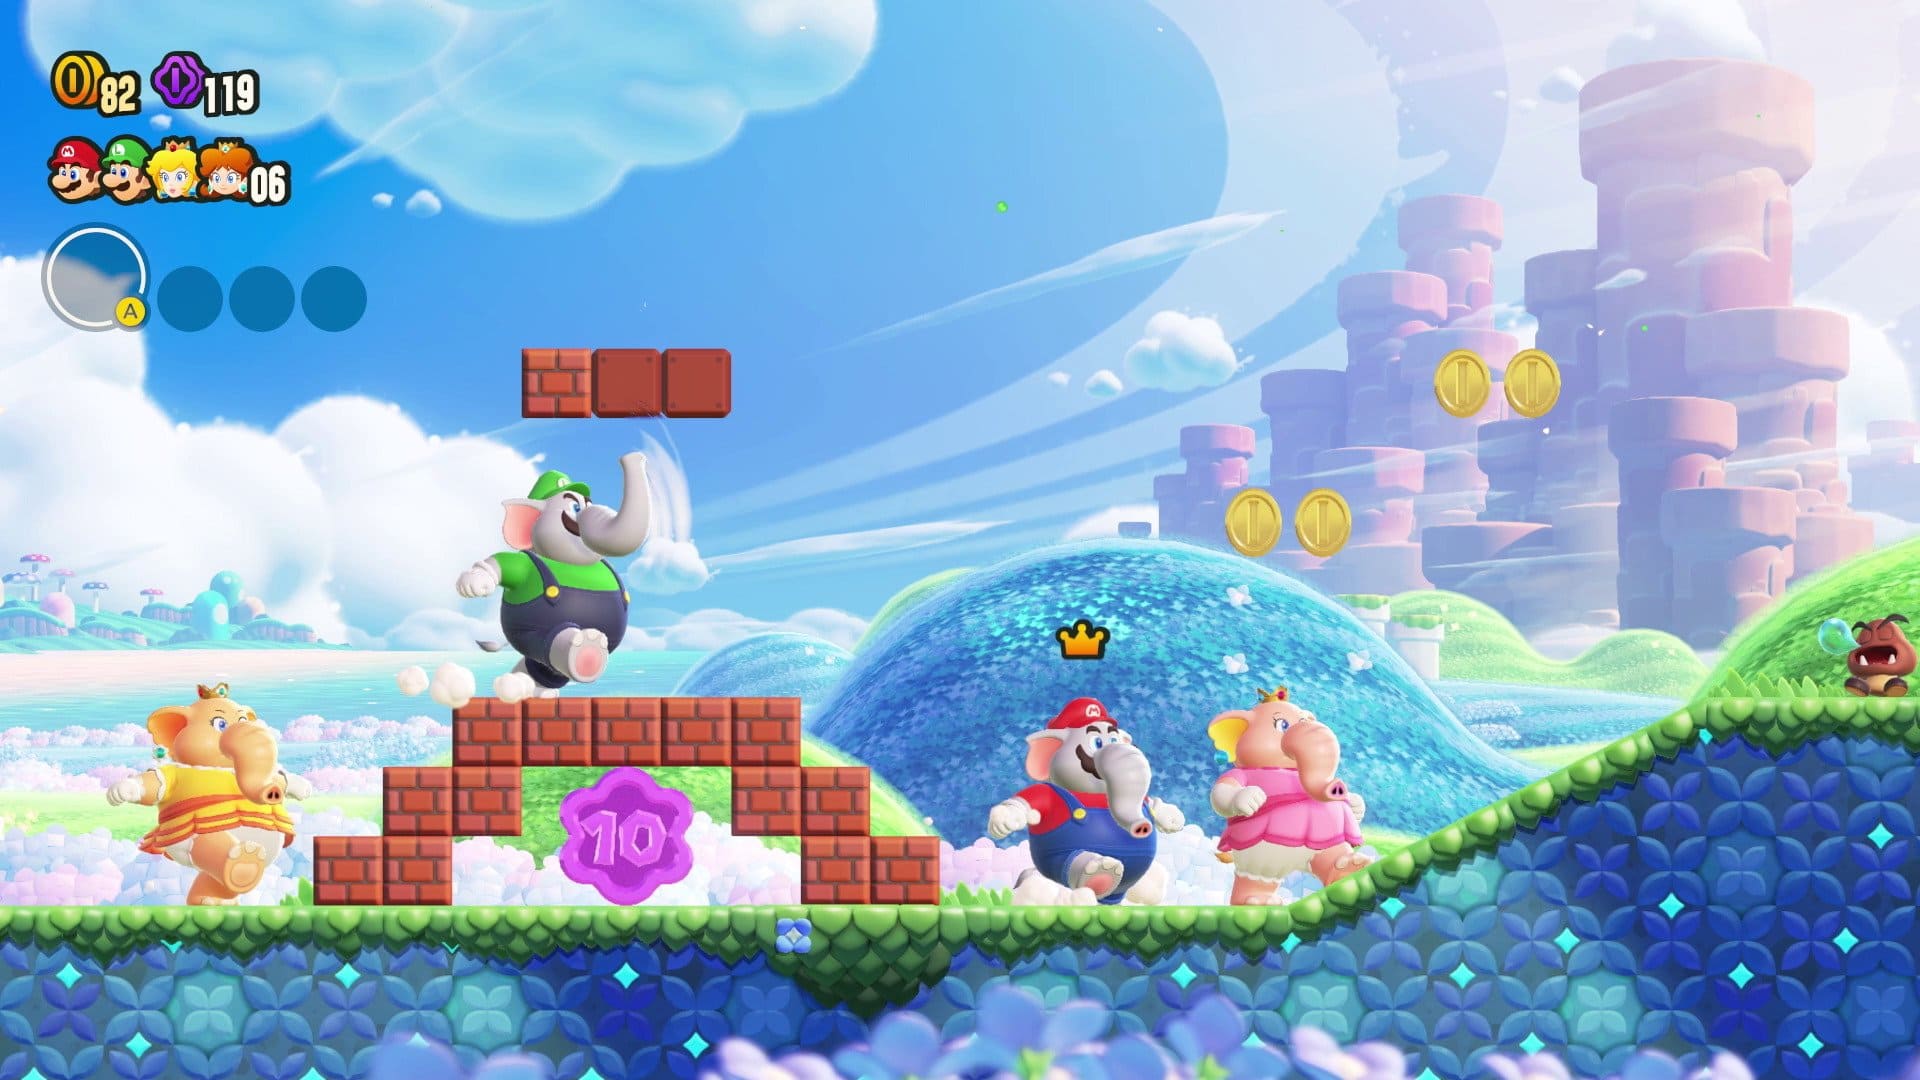 O NOVO JOGO DO MARIO PRA NINTENDO SWITCH ! - Super Mario Bros U Deluxe  (Gameplay PT-BR Português) 